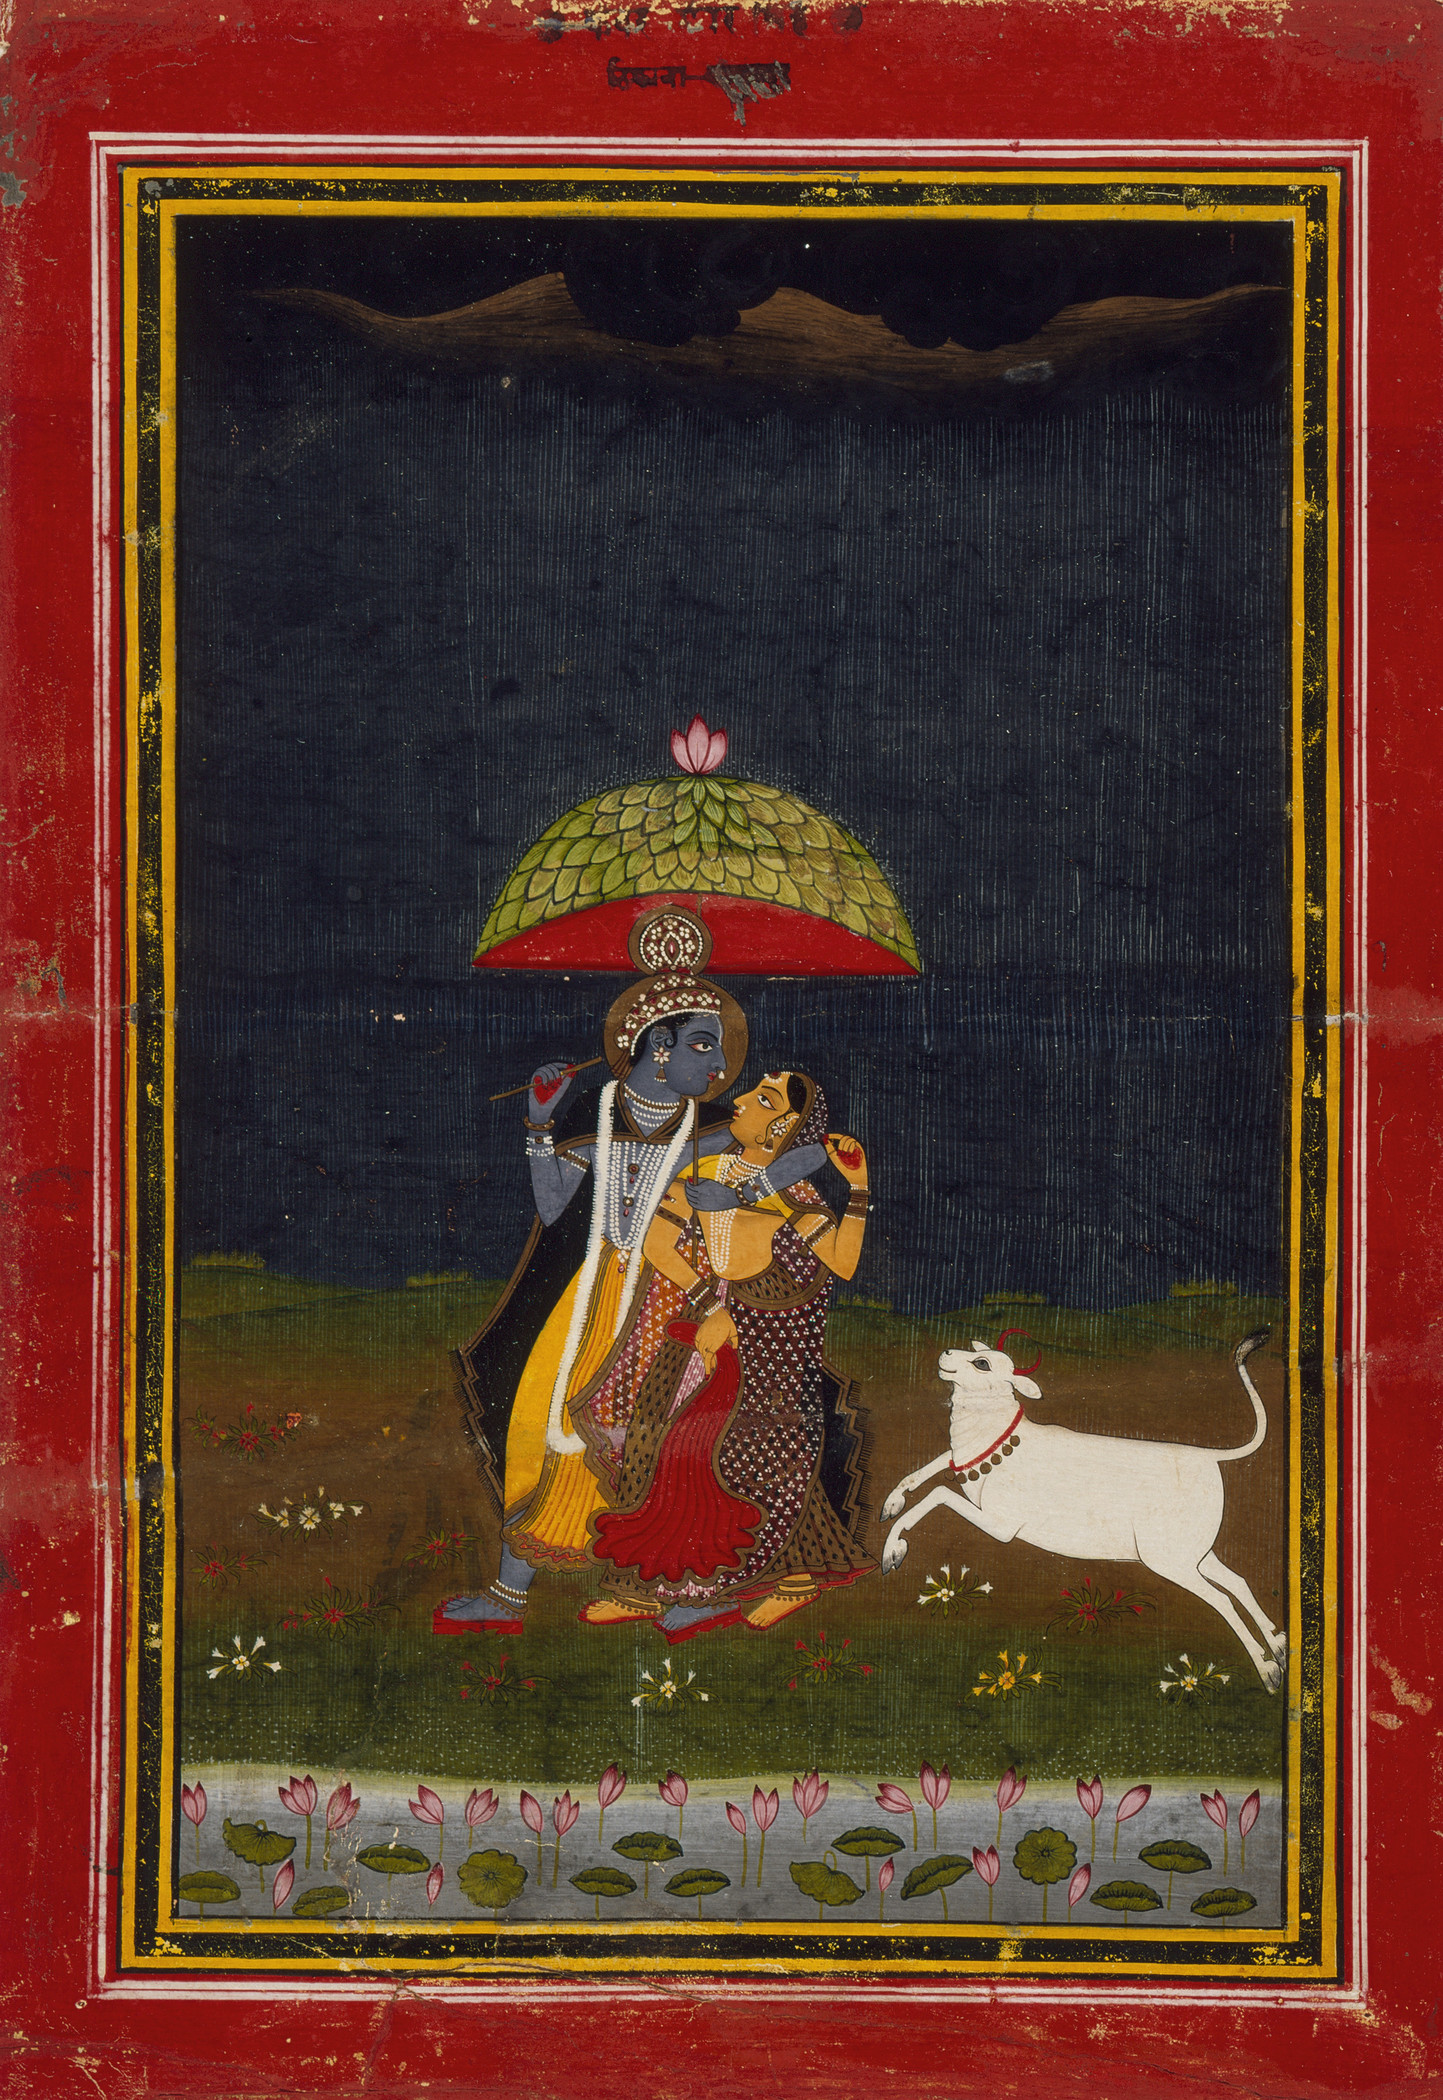 Krishna e Radna a passeggio sotto la pioggia by Unknown Artist - c. 1775 - 22,54 x 14,6 cm 